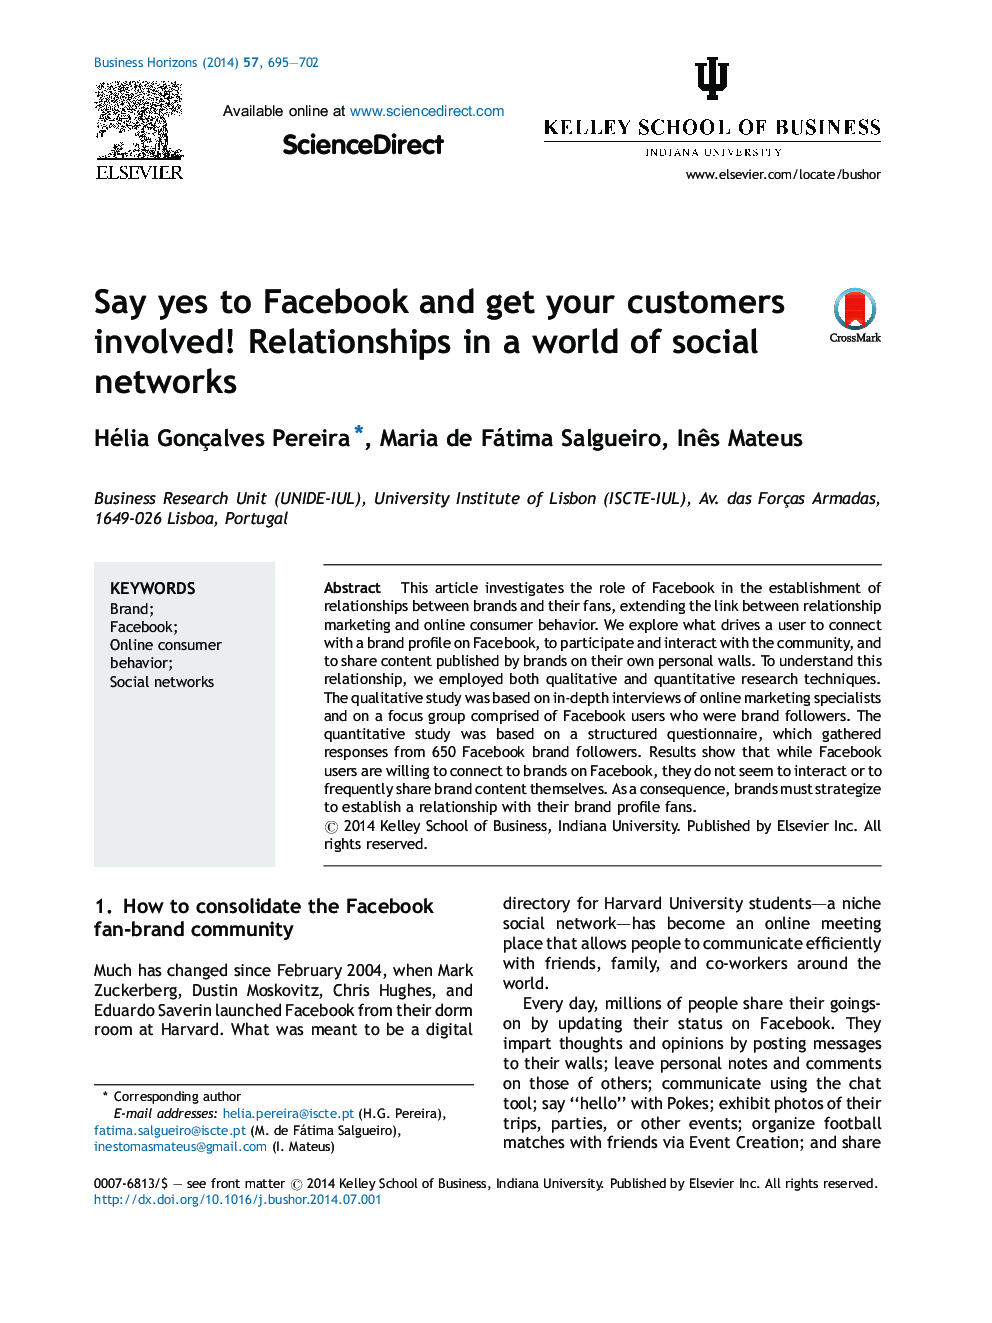 بله به فیس بوک و مشتریان خود را درگیر کنید! روابط در یک دنیای شبکه های اجتماعی 